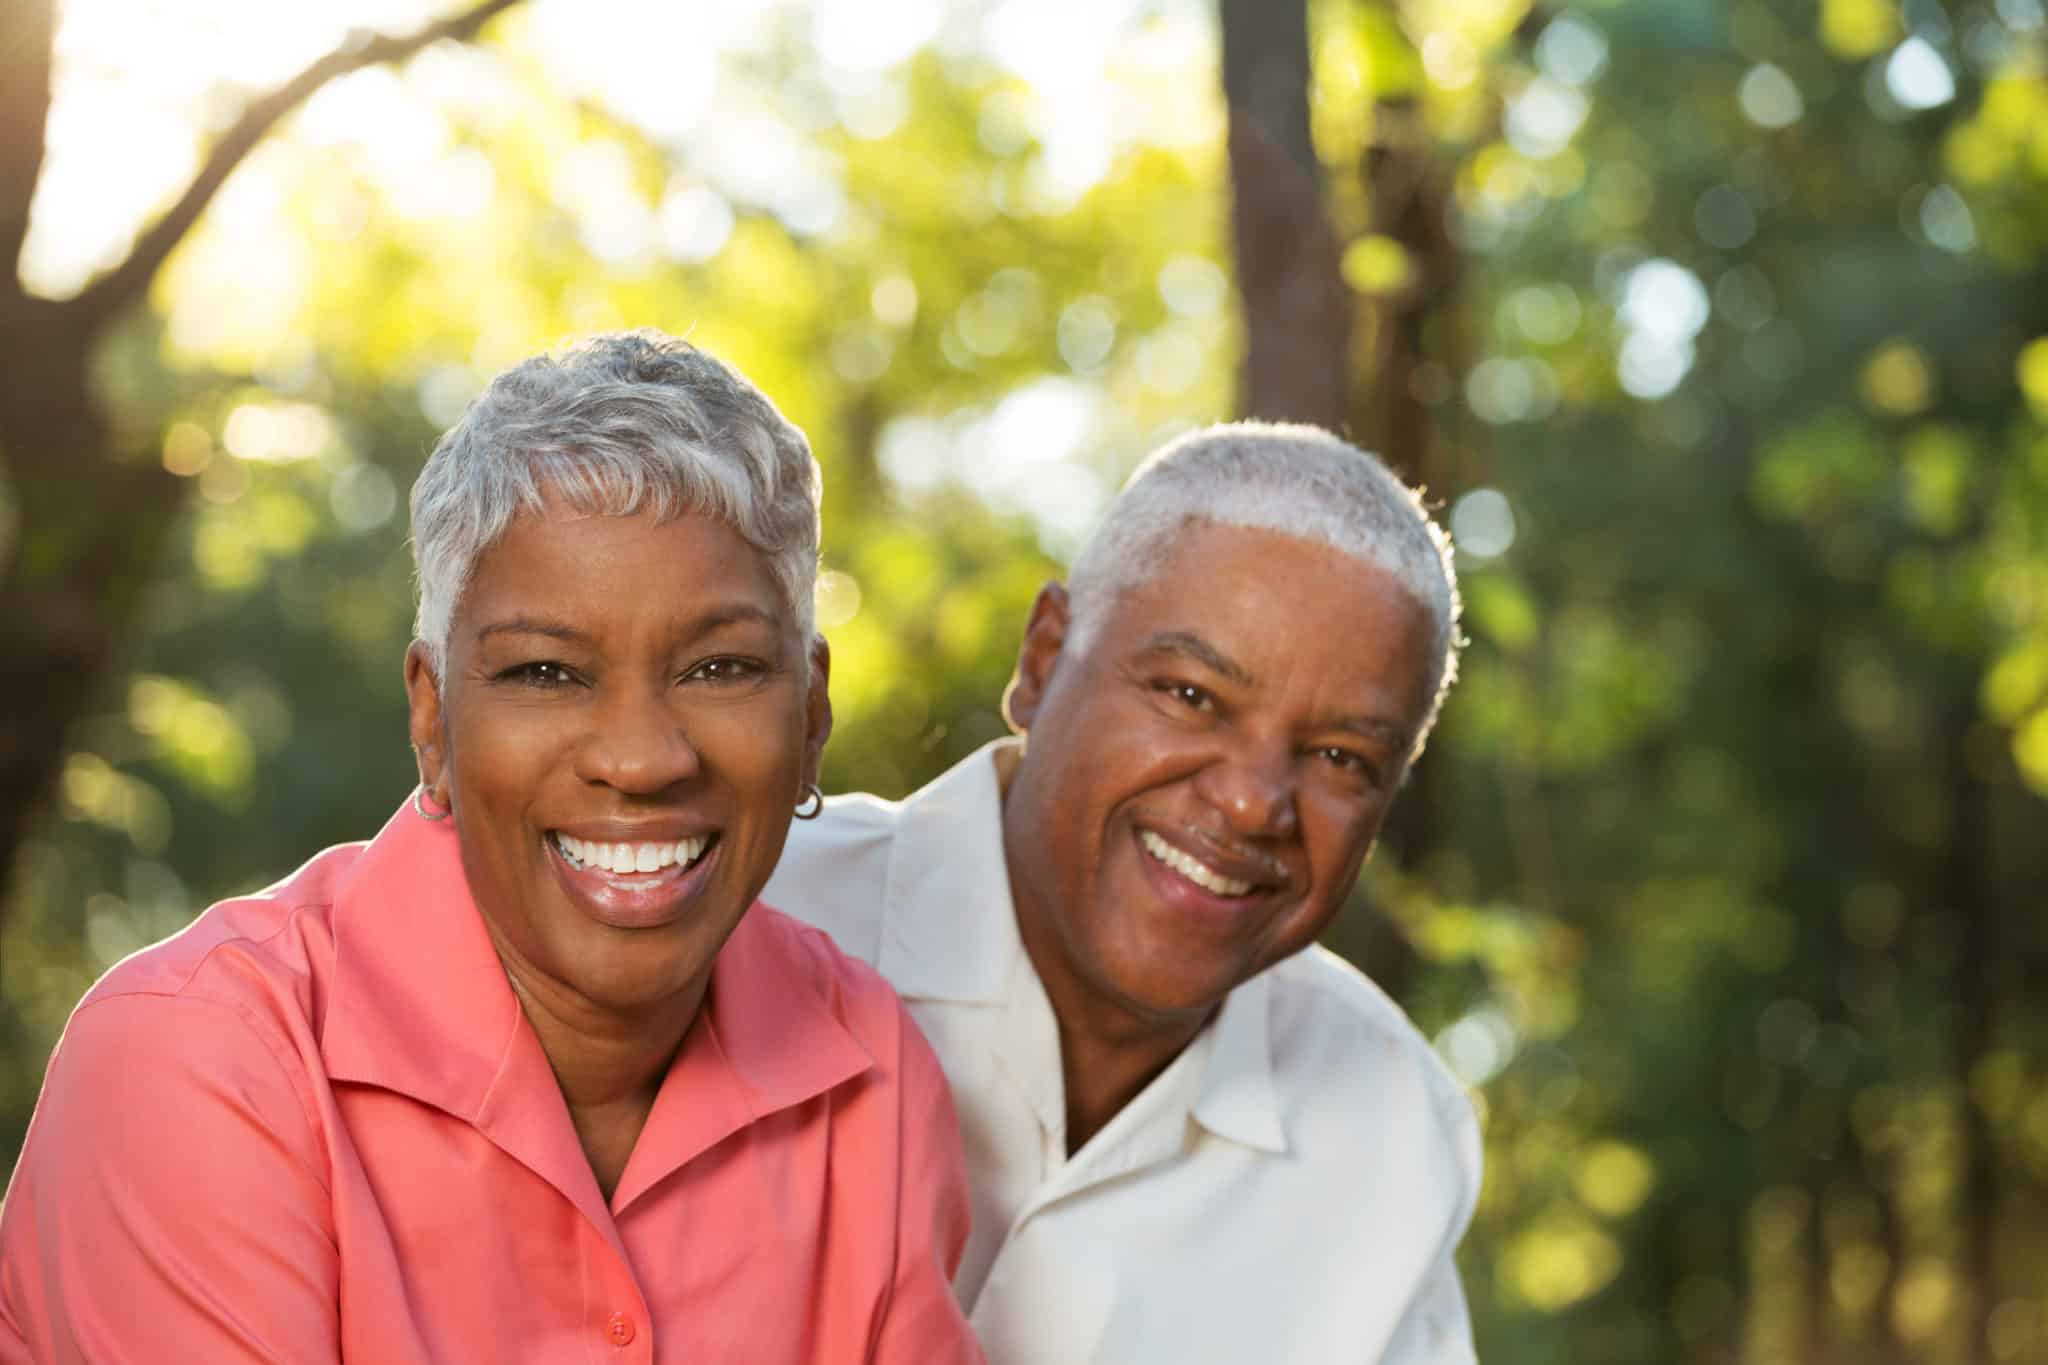 Happy elderly couple smiling